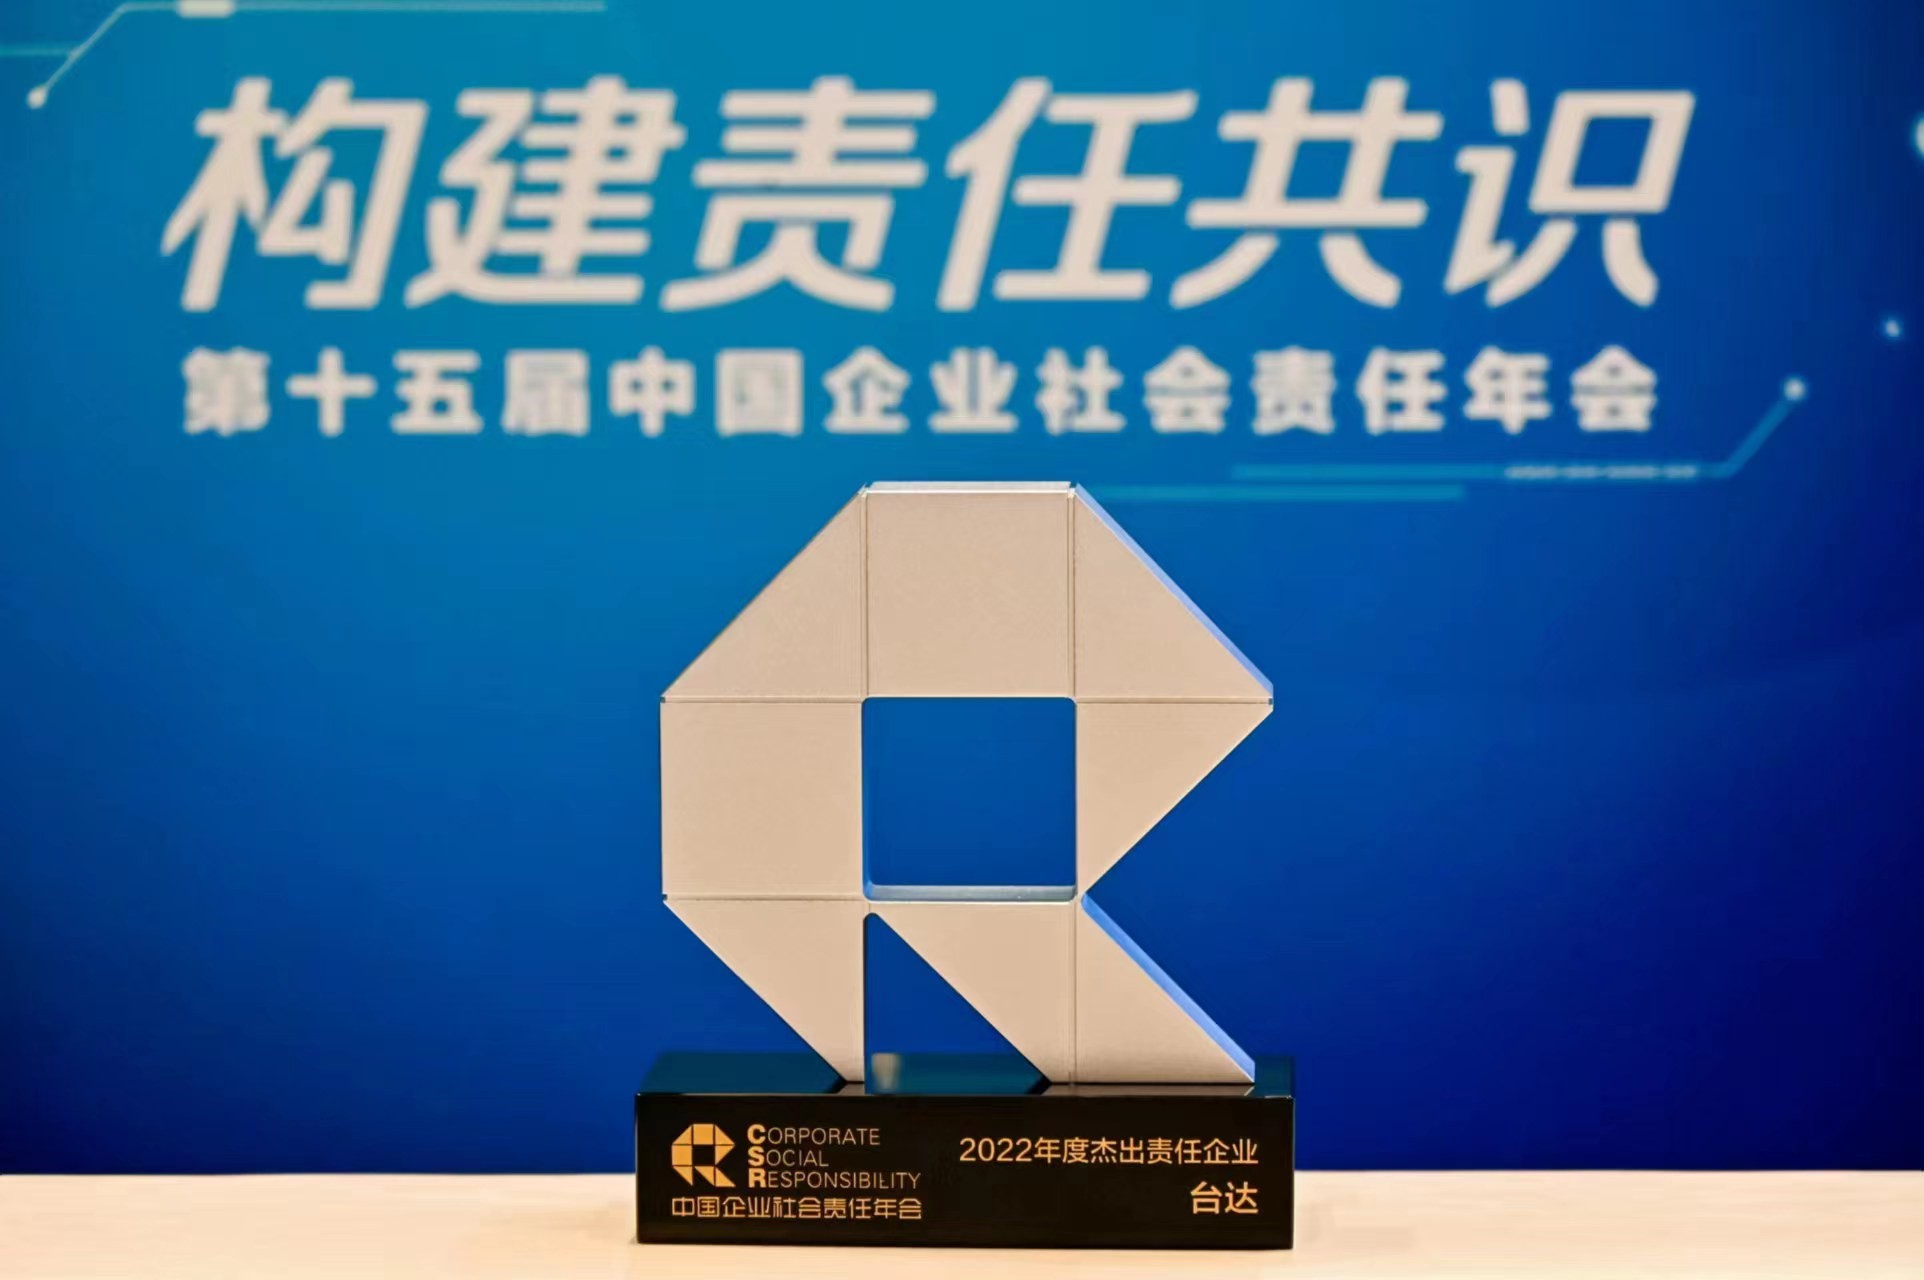 台达率先践行双碳目标 位列中国企业社会责任榜前四 连续四年获颁“杰出责任企业”